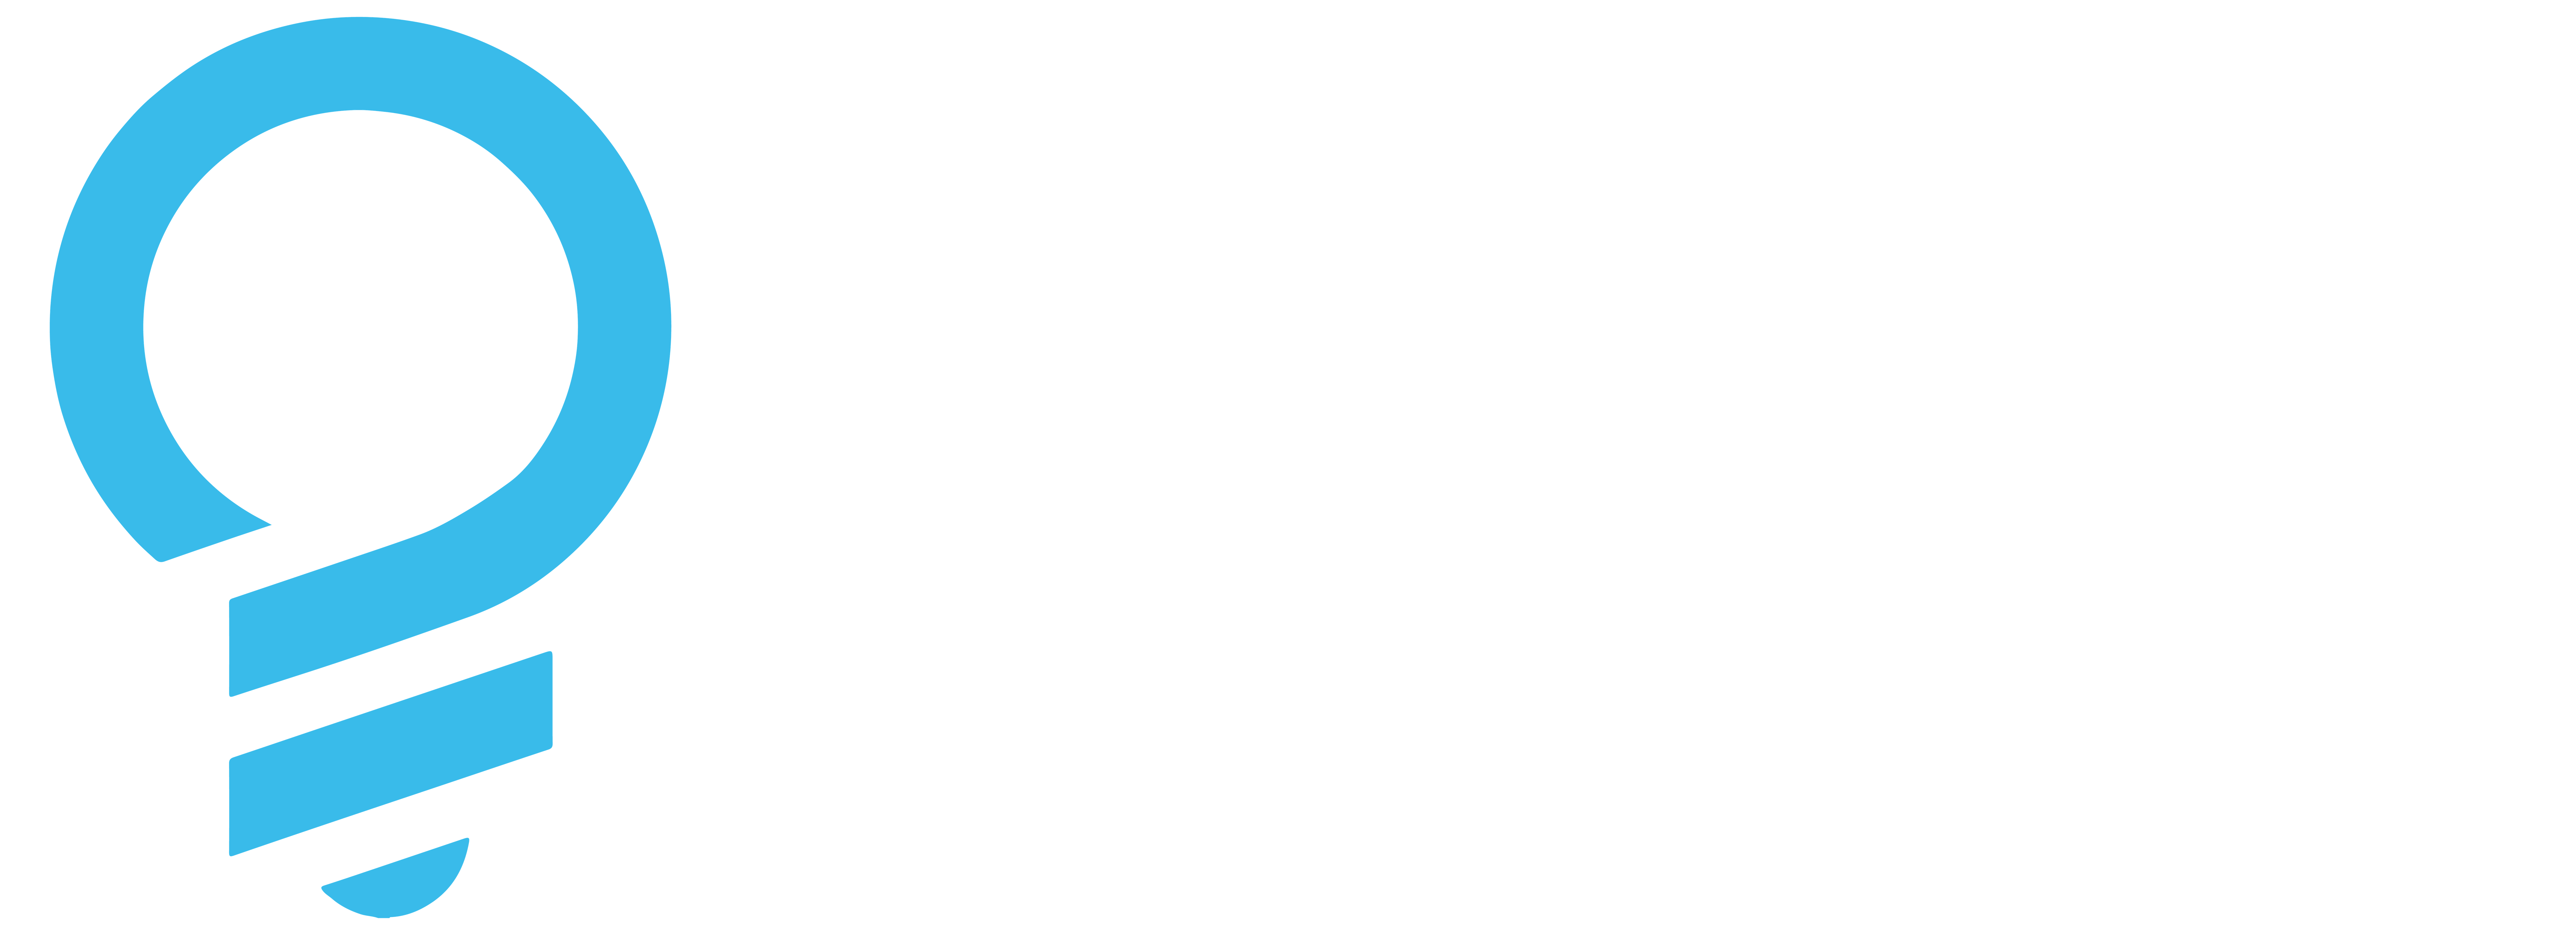 Genius logo lightbulb blue and white